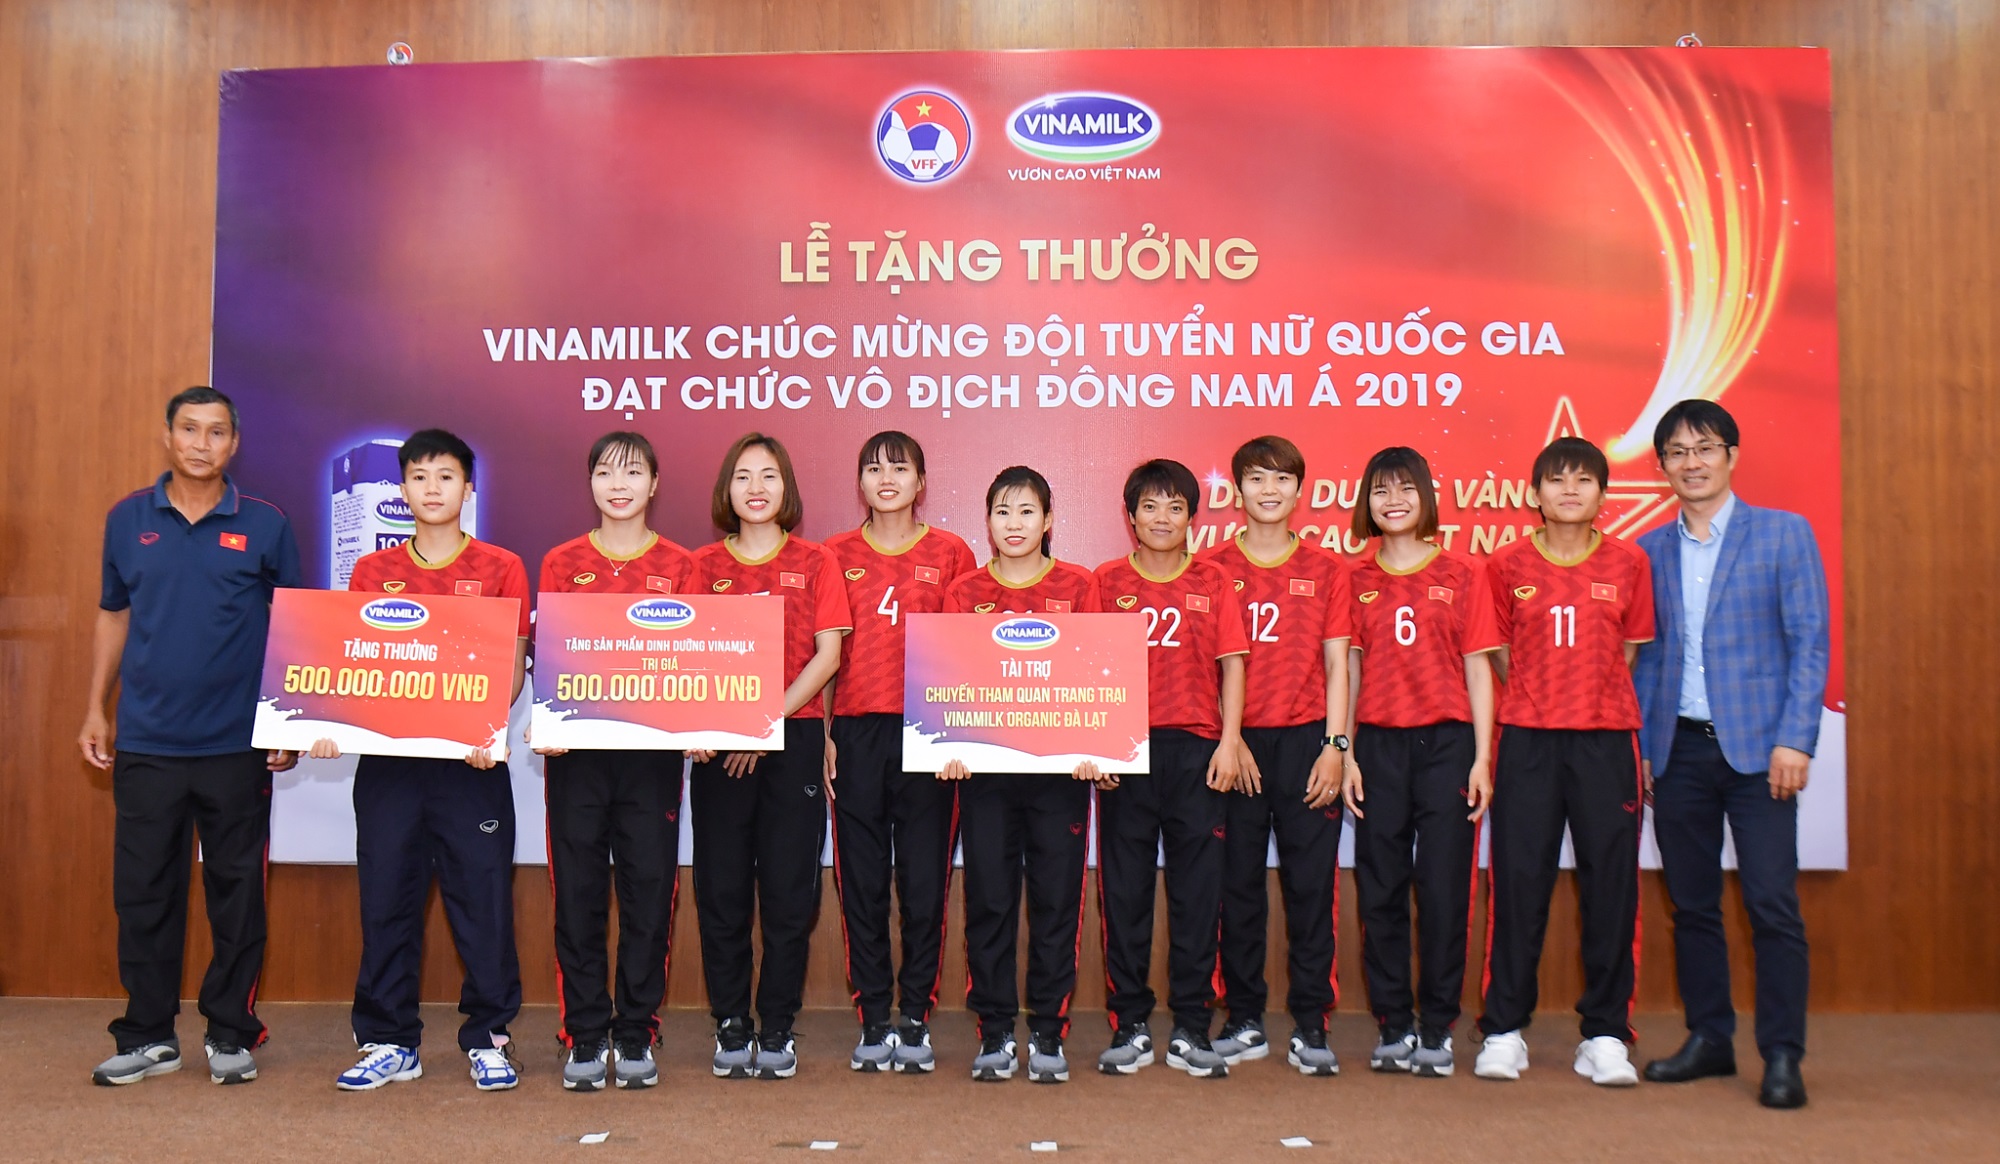 Vinamilk trao thưởng chúc mừng đội tuyển bóng đá nữ quốc gia vô địch Đông Nam Á 2019 - Ảnh 1